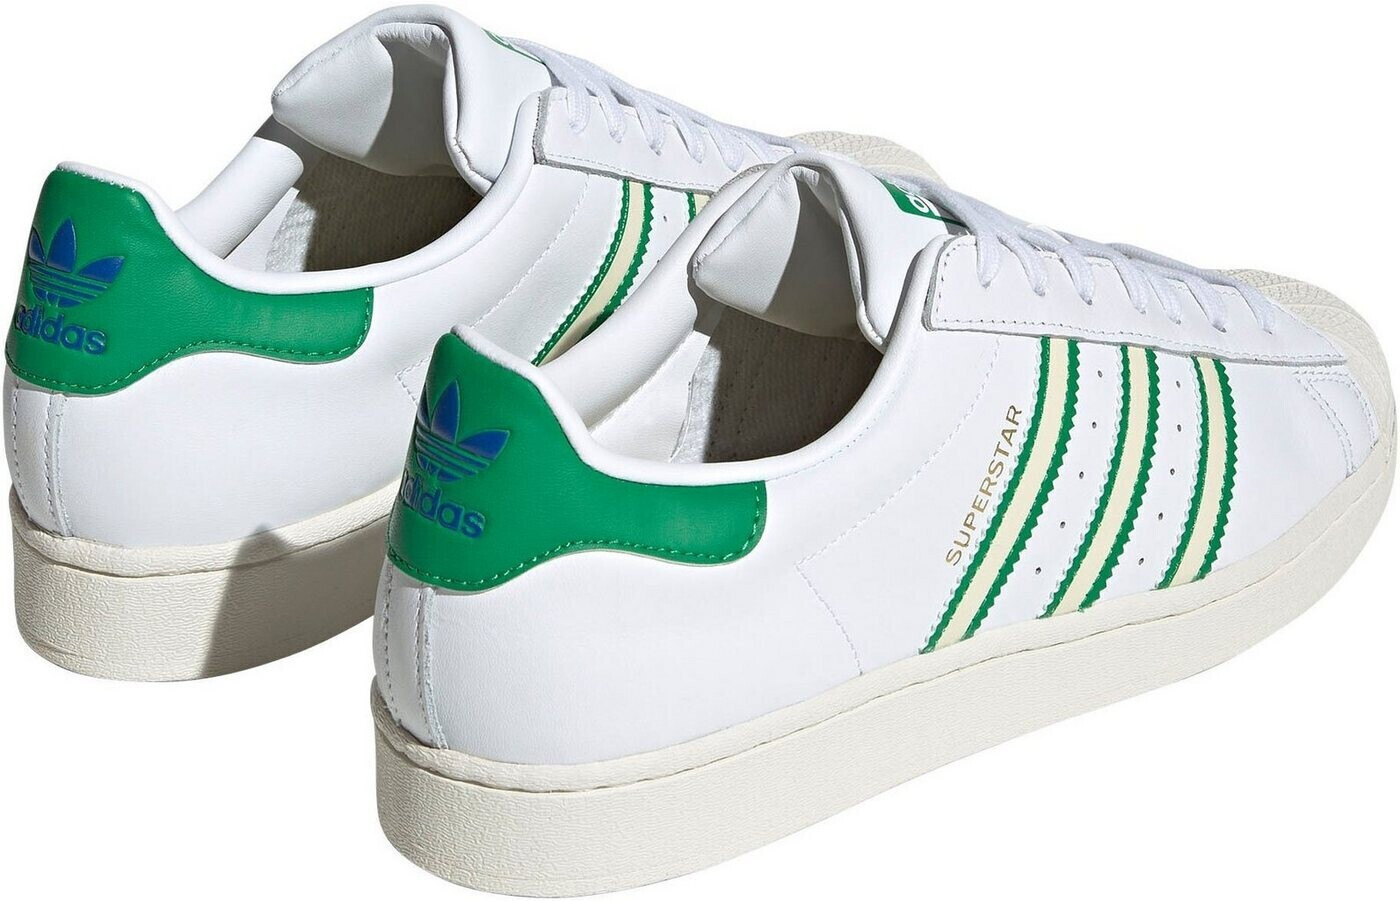 Adidas Superstar ftwr white/off white/green ab 71,19 € | Preisvergleich bei